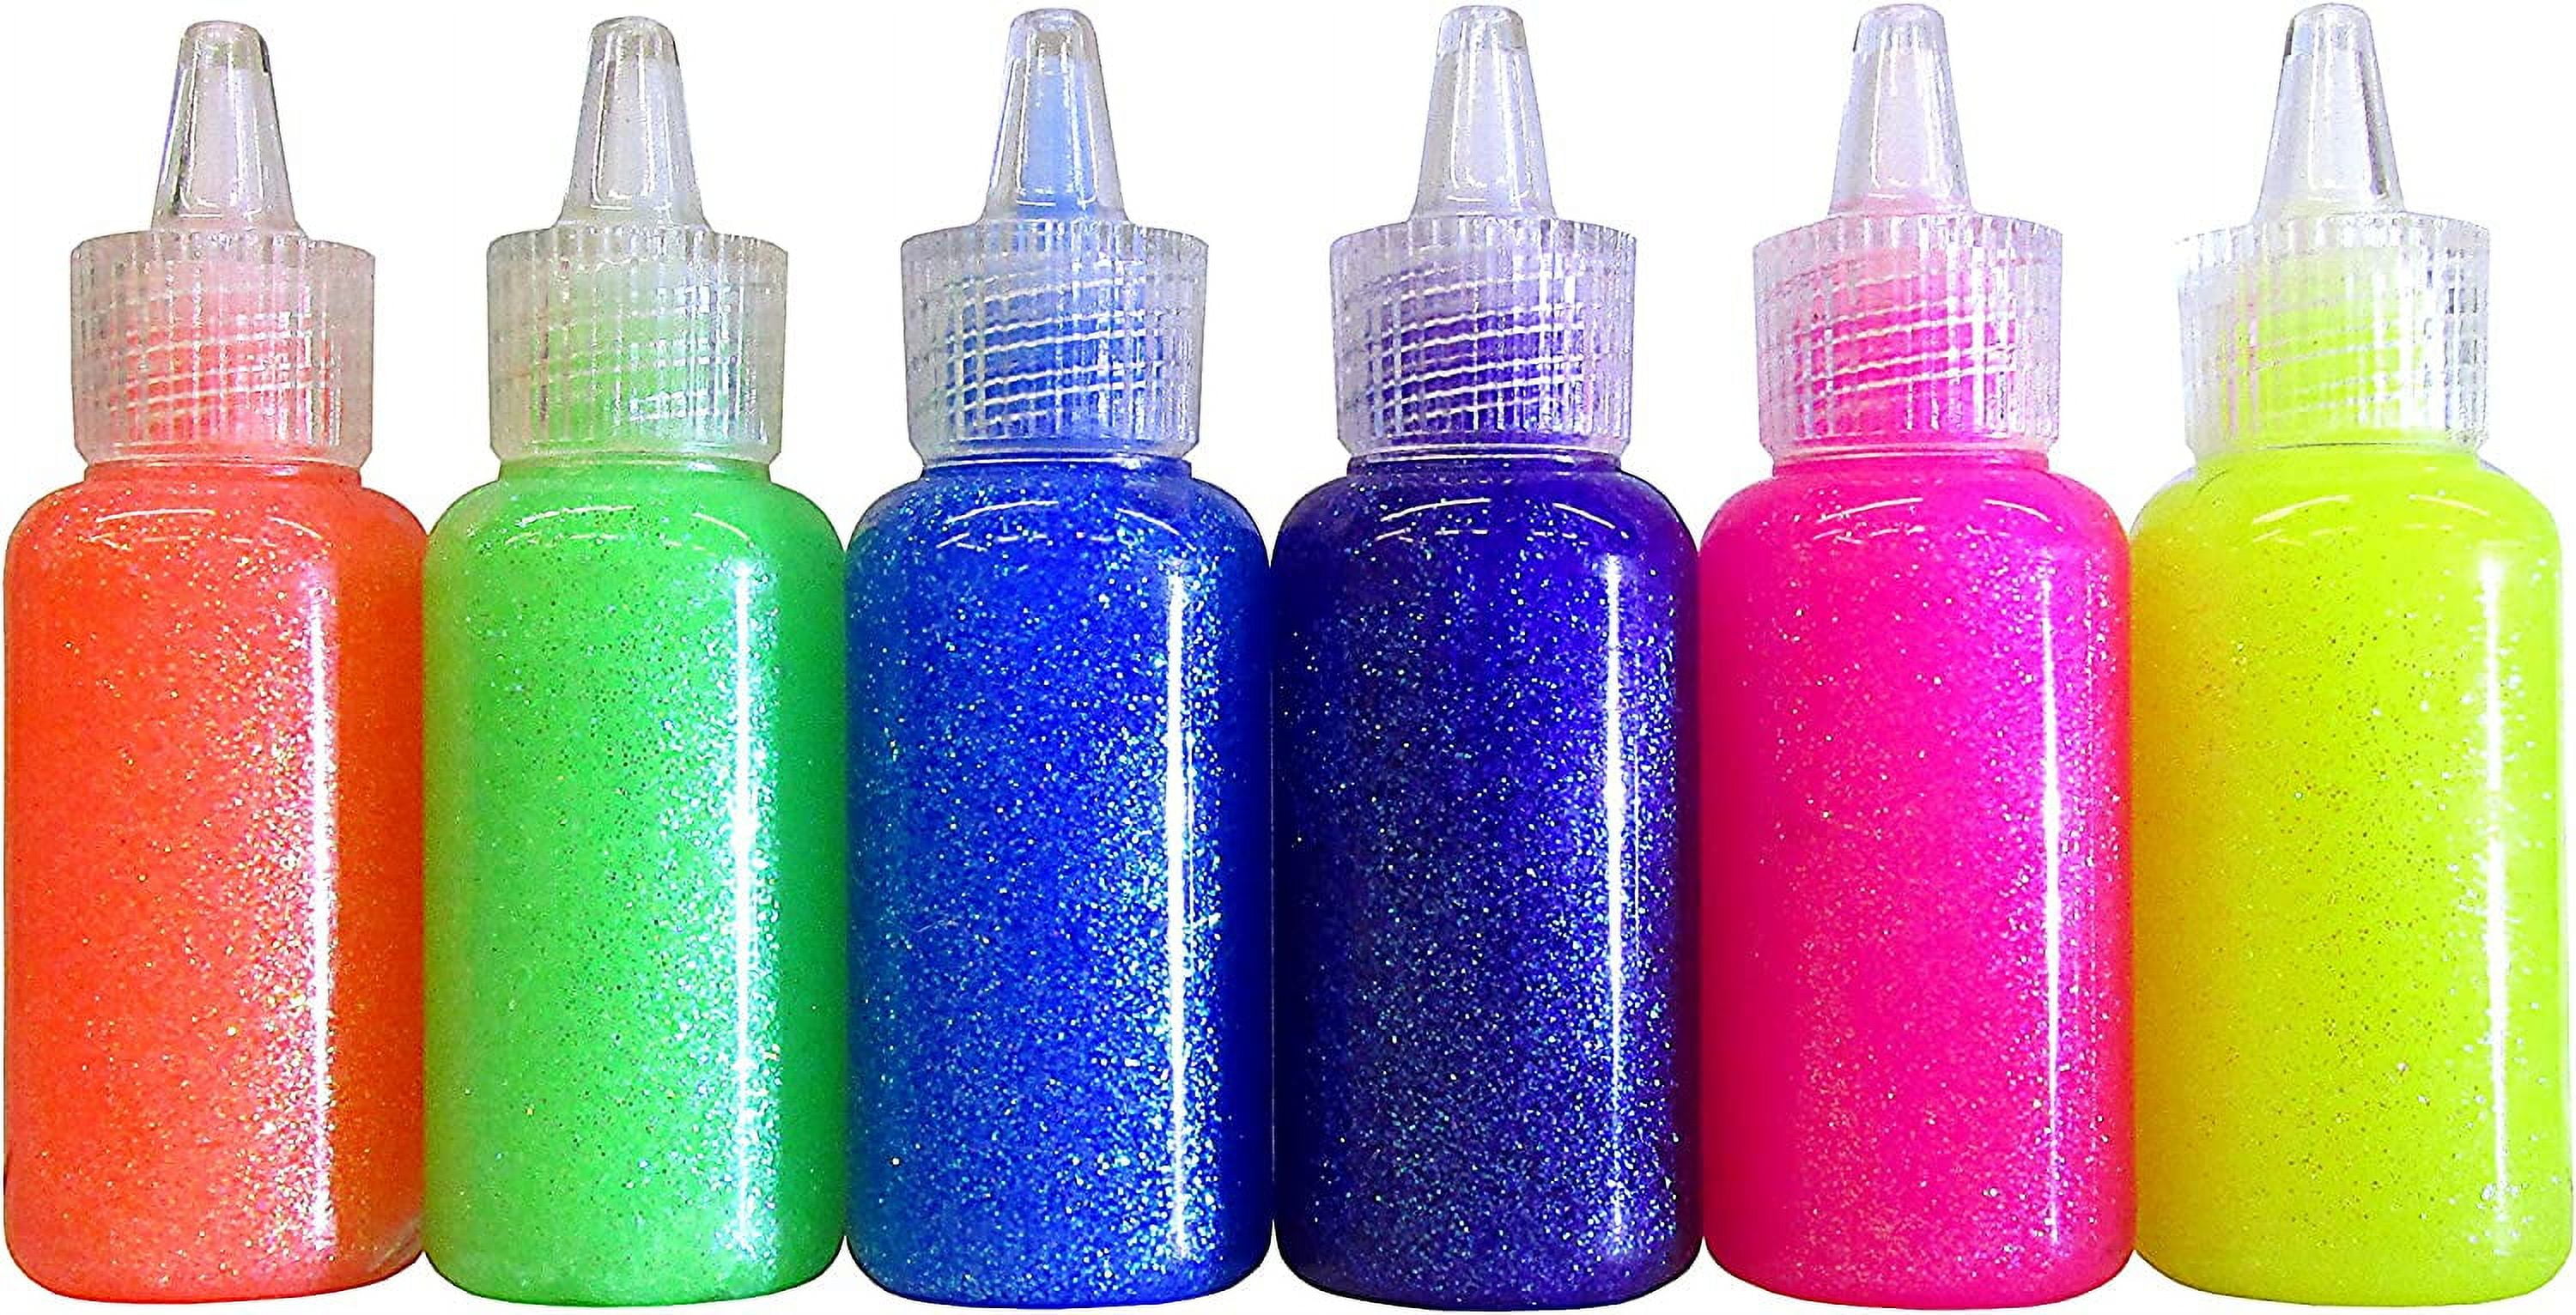  BAZIC 6 Color Glitter Glue Set 20 Milliliter Bottles